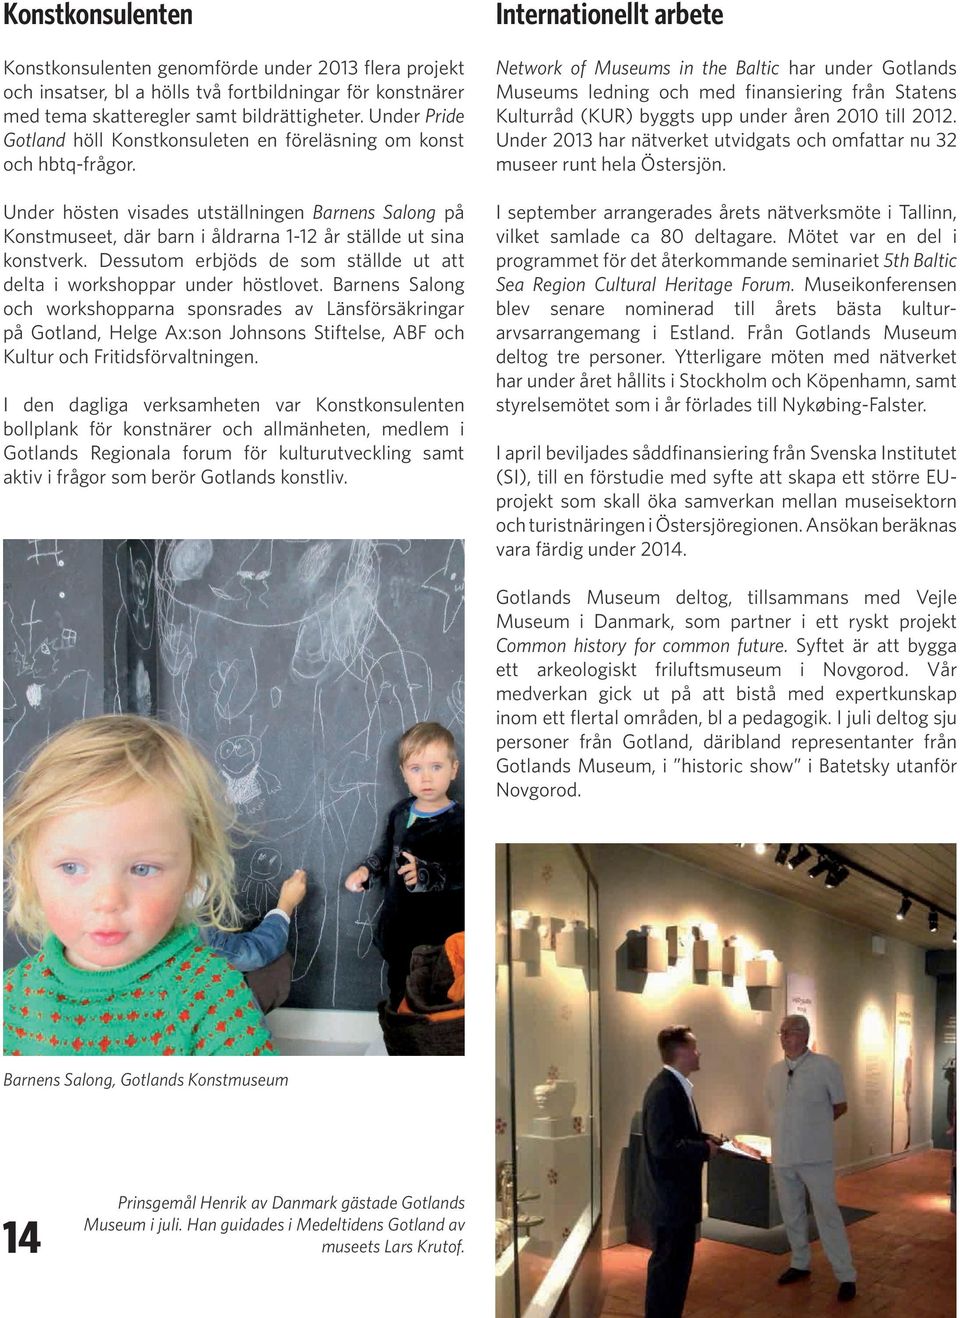 Under hösten visades utställningen Barnens Salong på Konstmuseet, där barn i åldrarna 1-12 år ställde ut sina konstverk. Dessutom erbjöds de som ställde ut att delta i workshoppar under höstlovet.